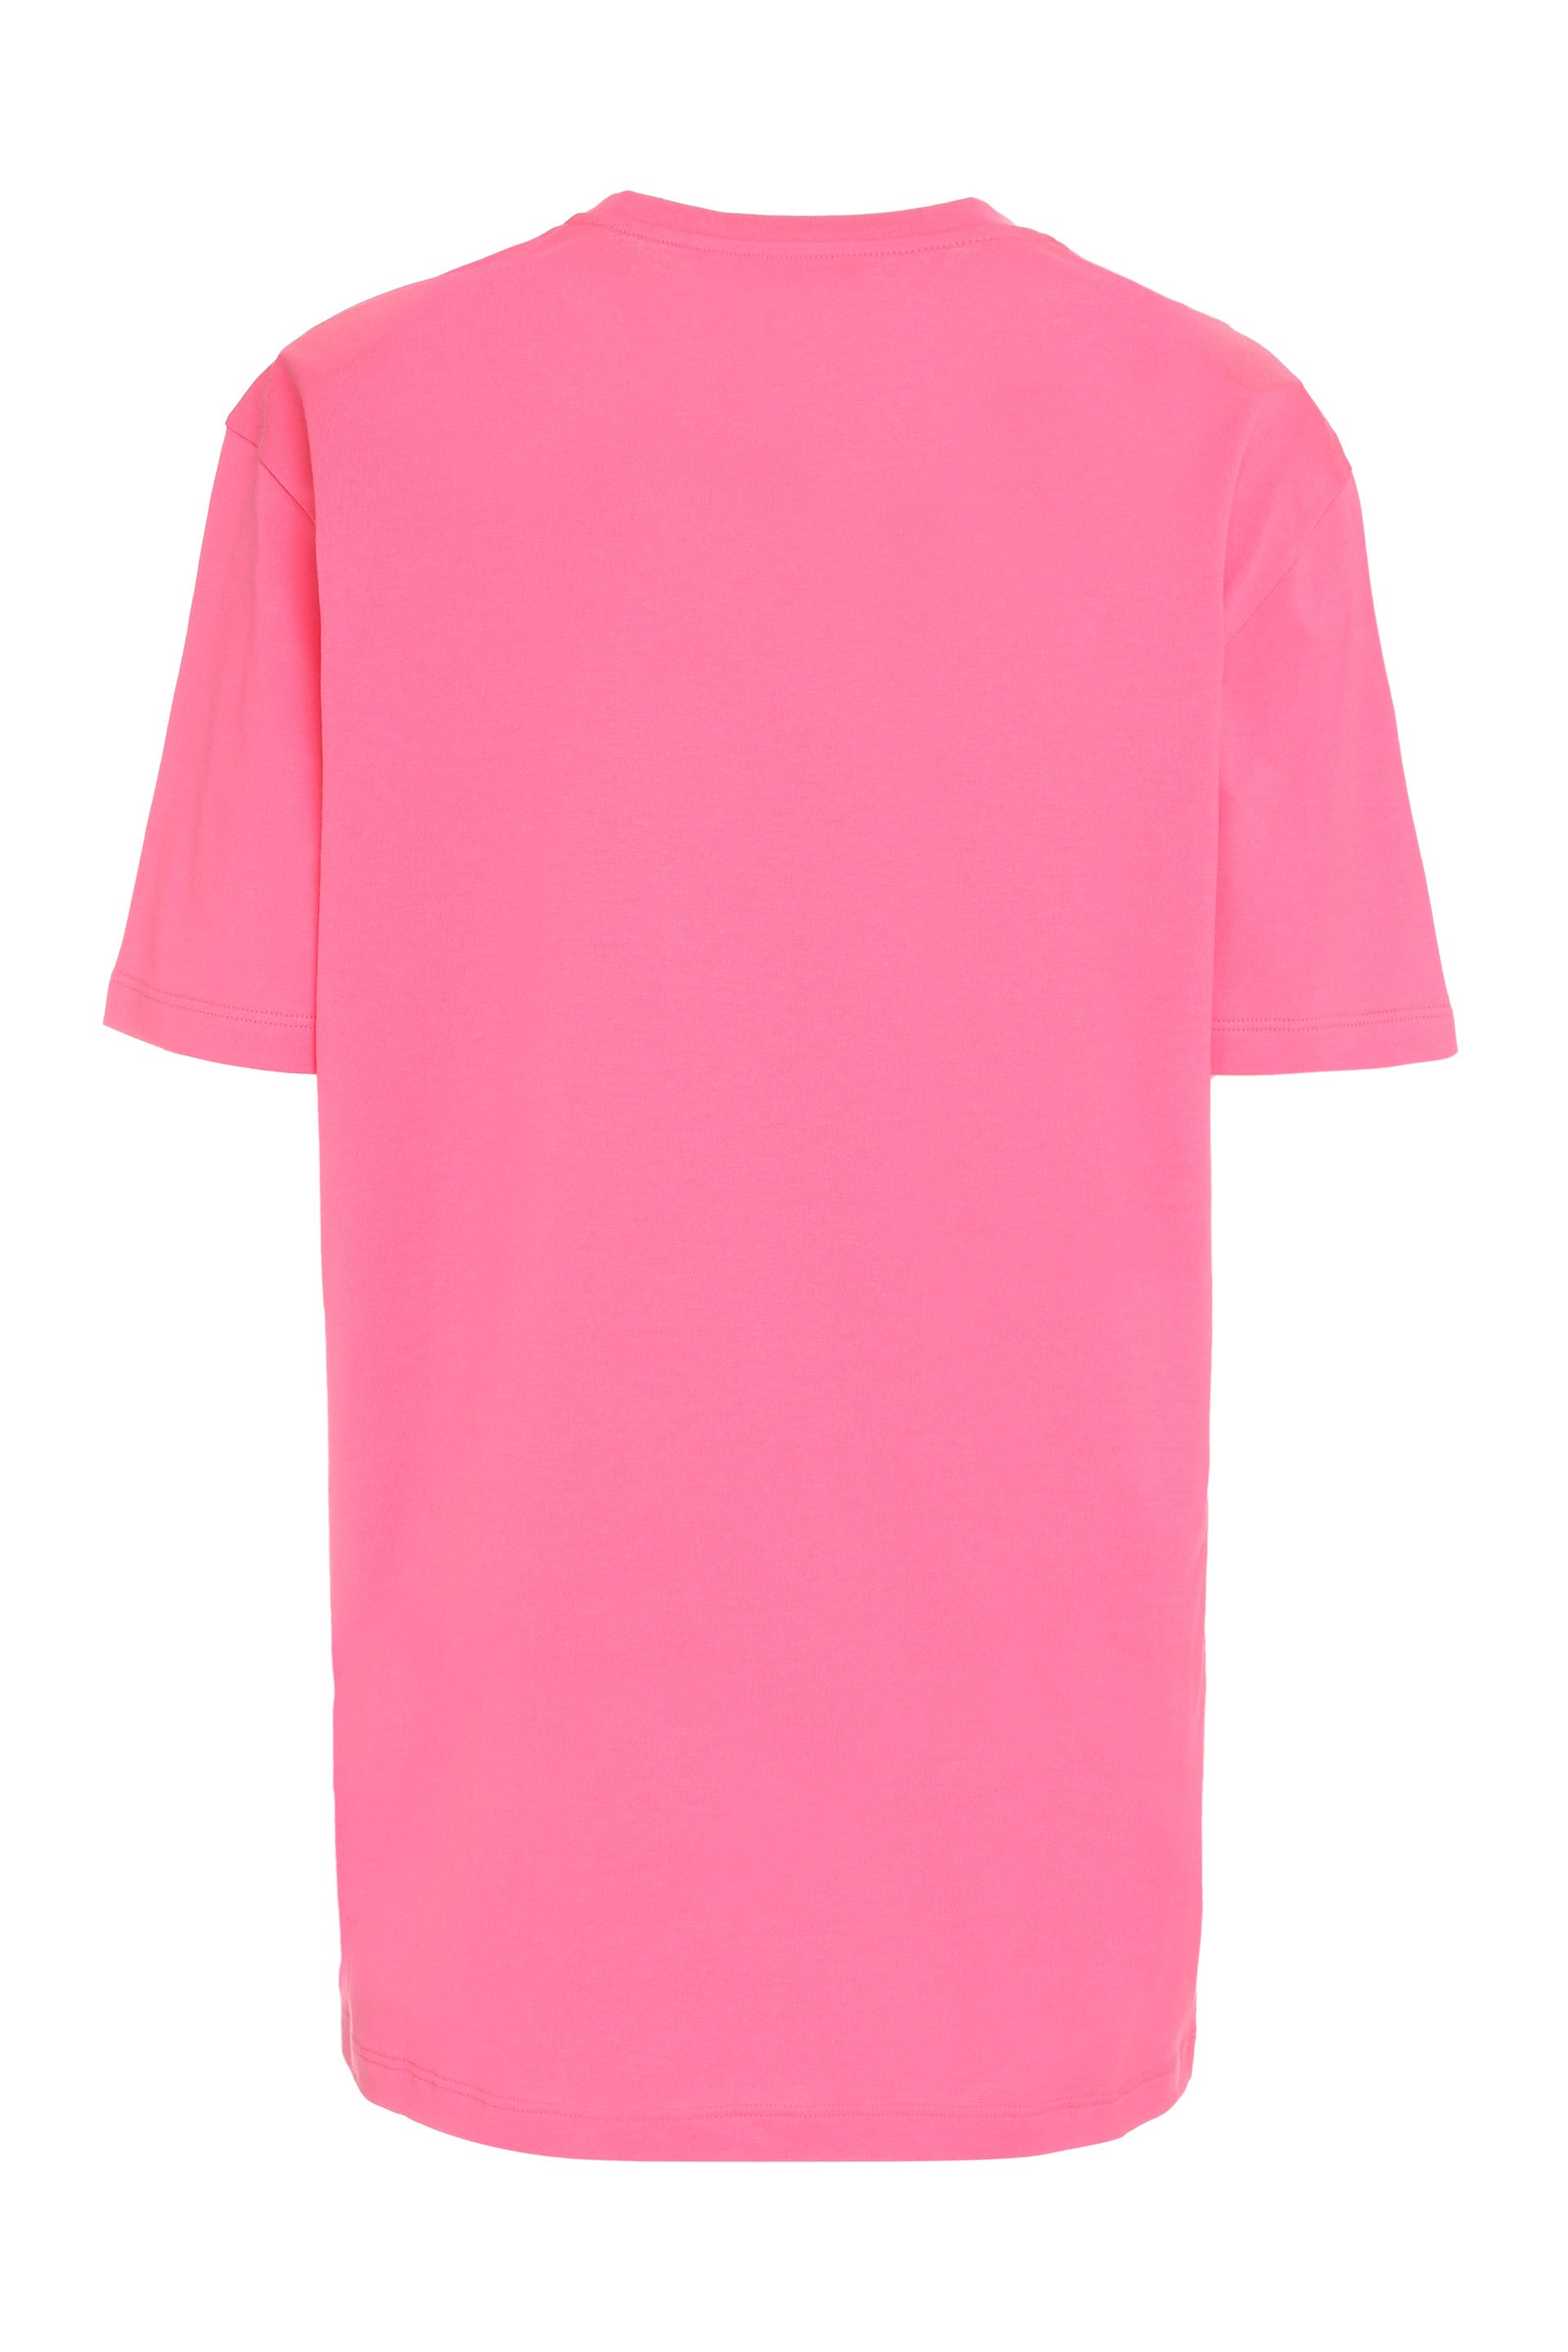 Printed cotton T-shirt-Versace-OUTLET-SALE-42-ARCHIVIST